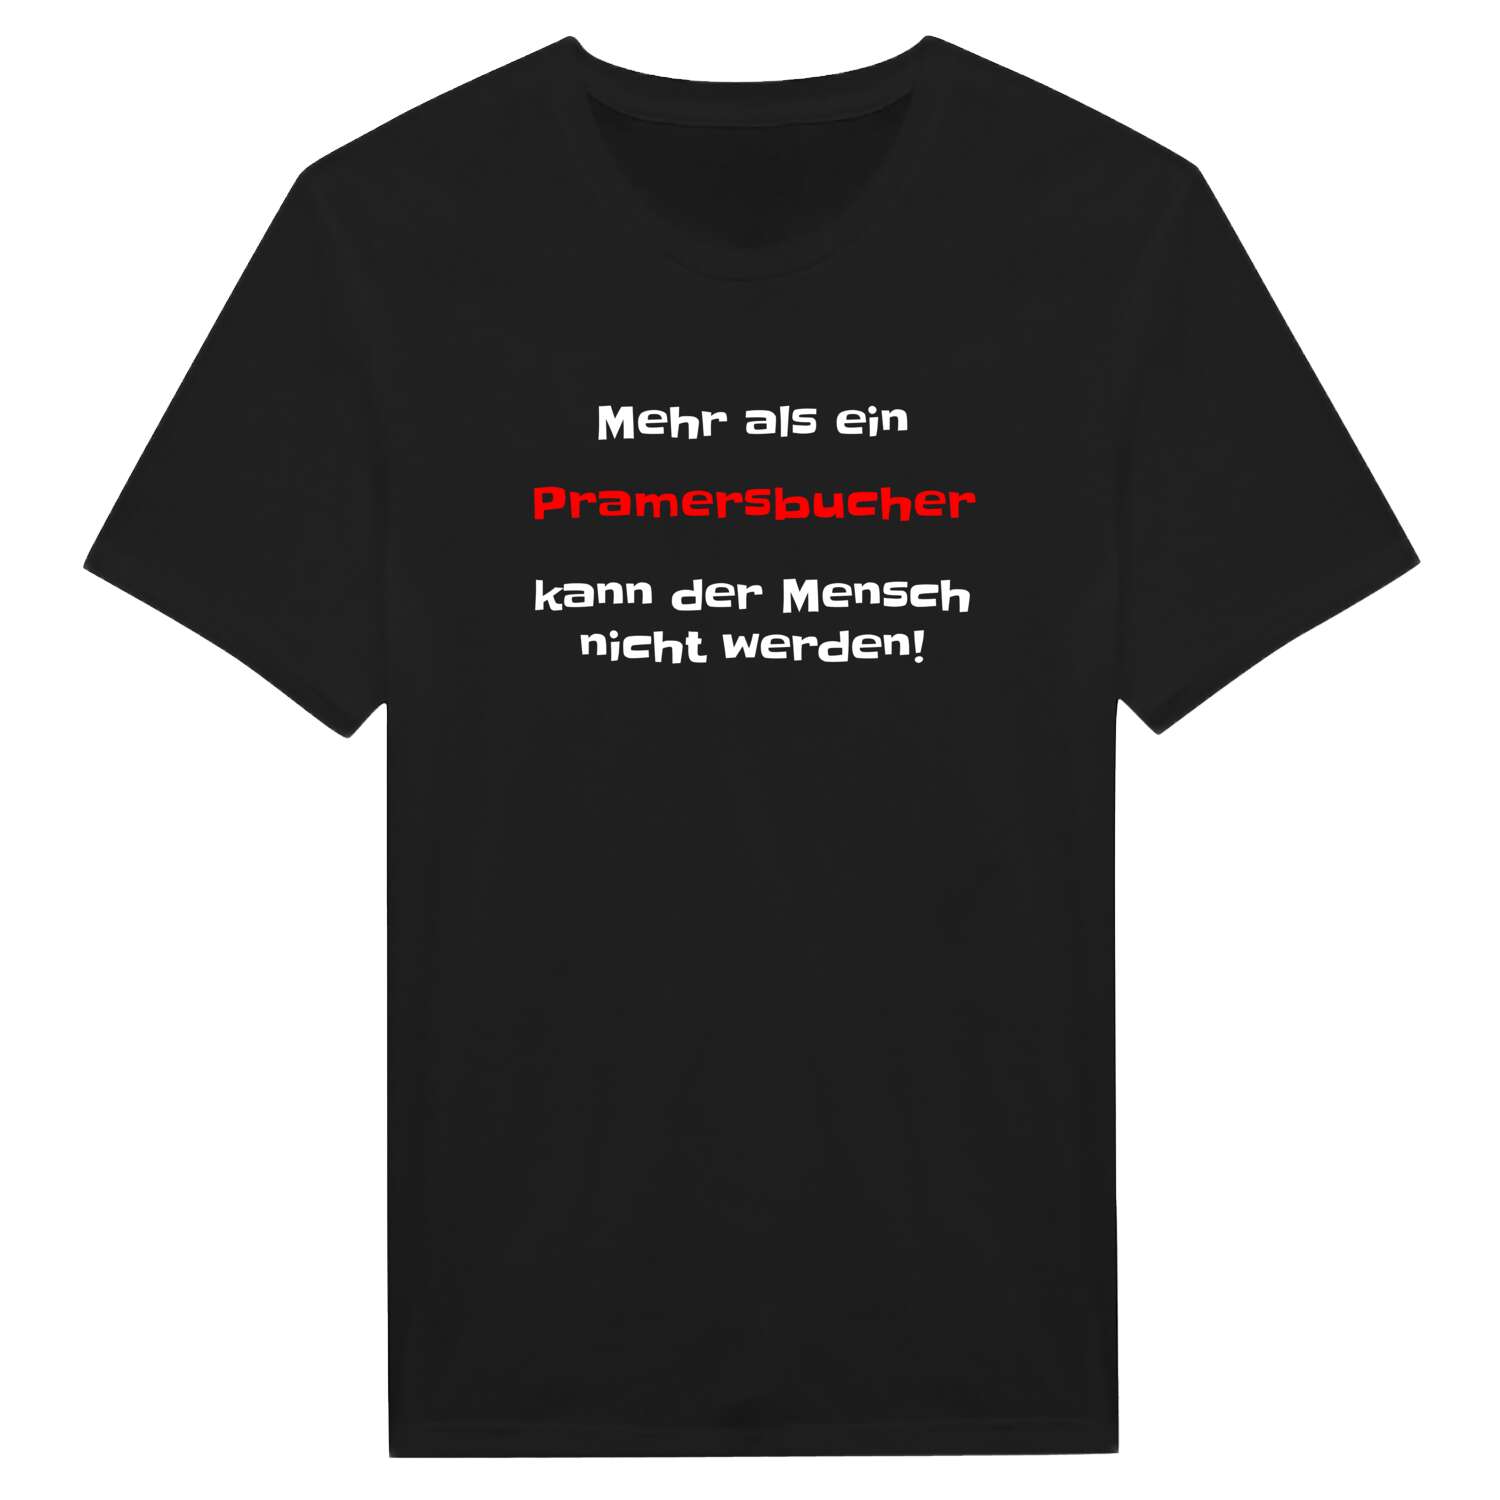 Pramersbuch T-Shirt »Mehr als ein«